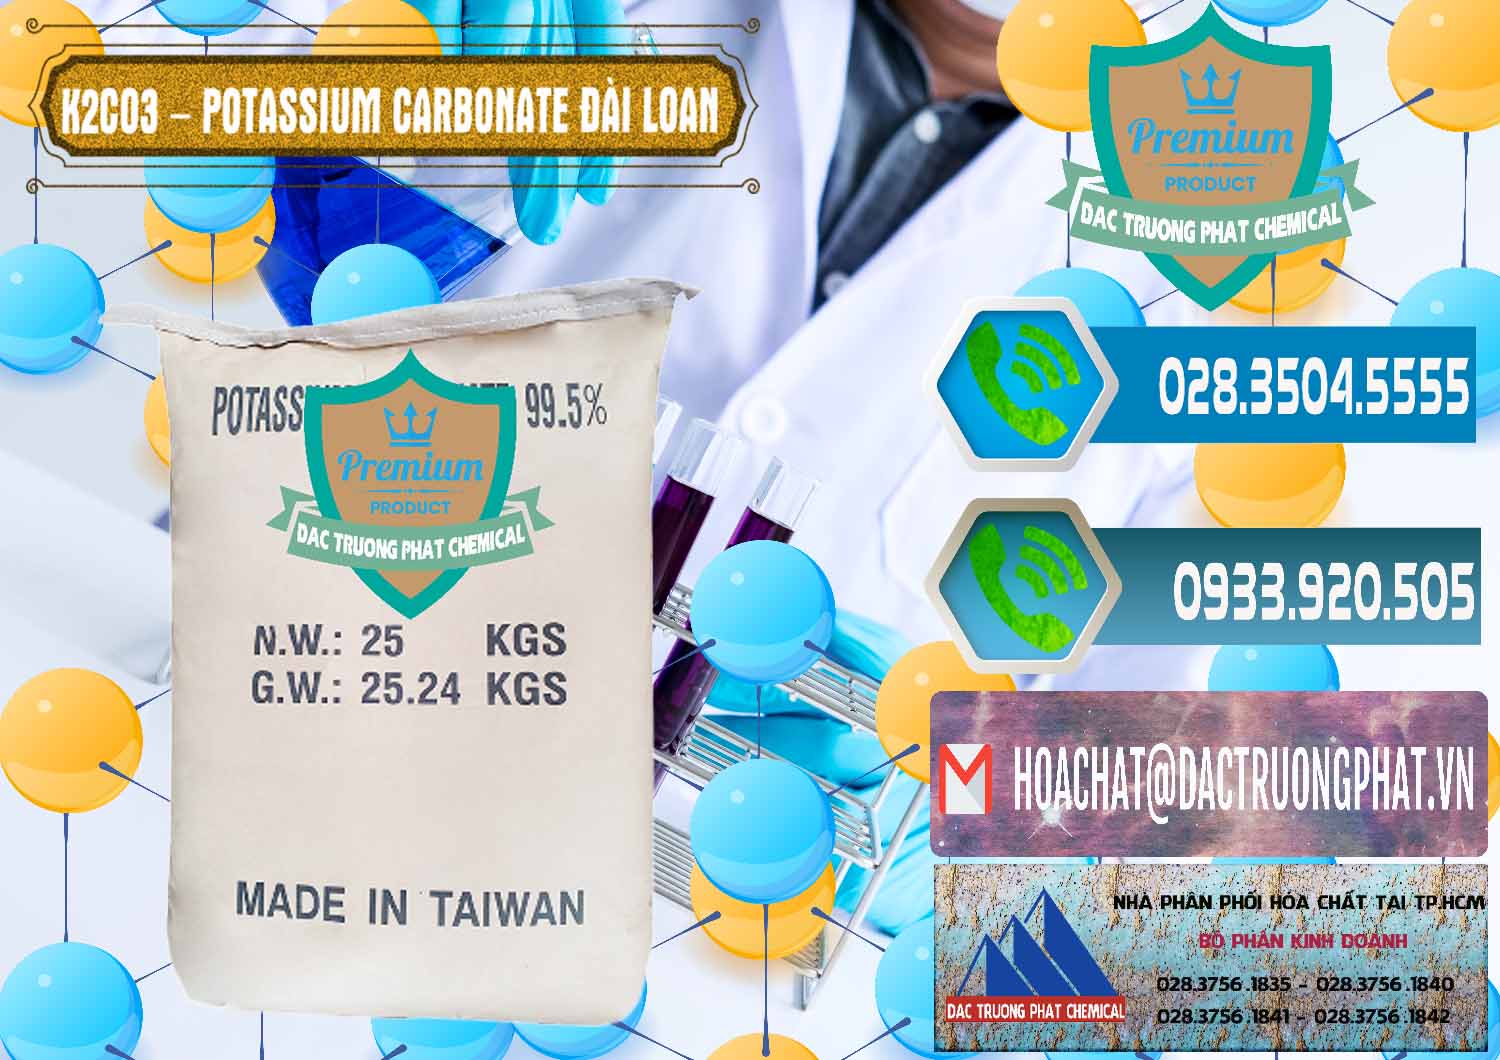 Cty chuyên bán ( cung ứng ) K2Co3 – Potassium Carbonate Đài Loan Taiwan - 0474 - Cty chuyên kinh doanh & phân phối hóa chất tại TP.HCM - congtyhoachat.net